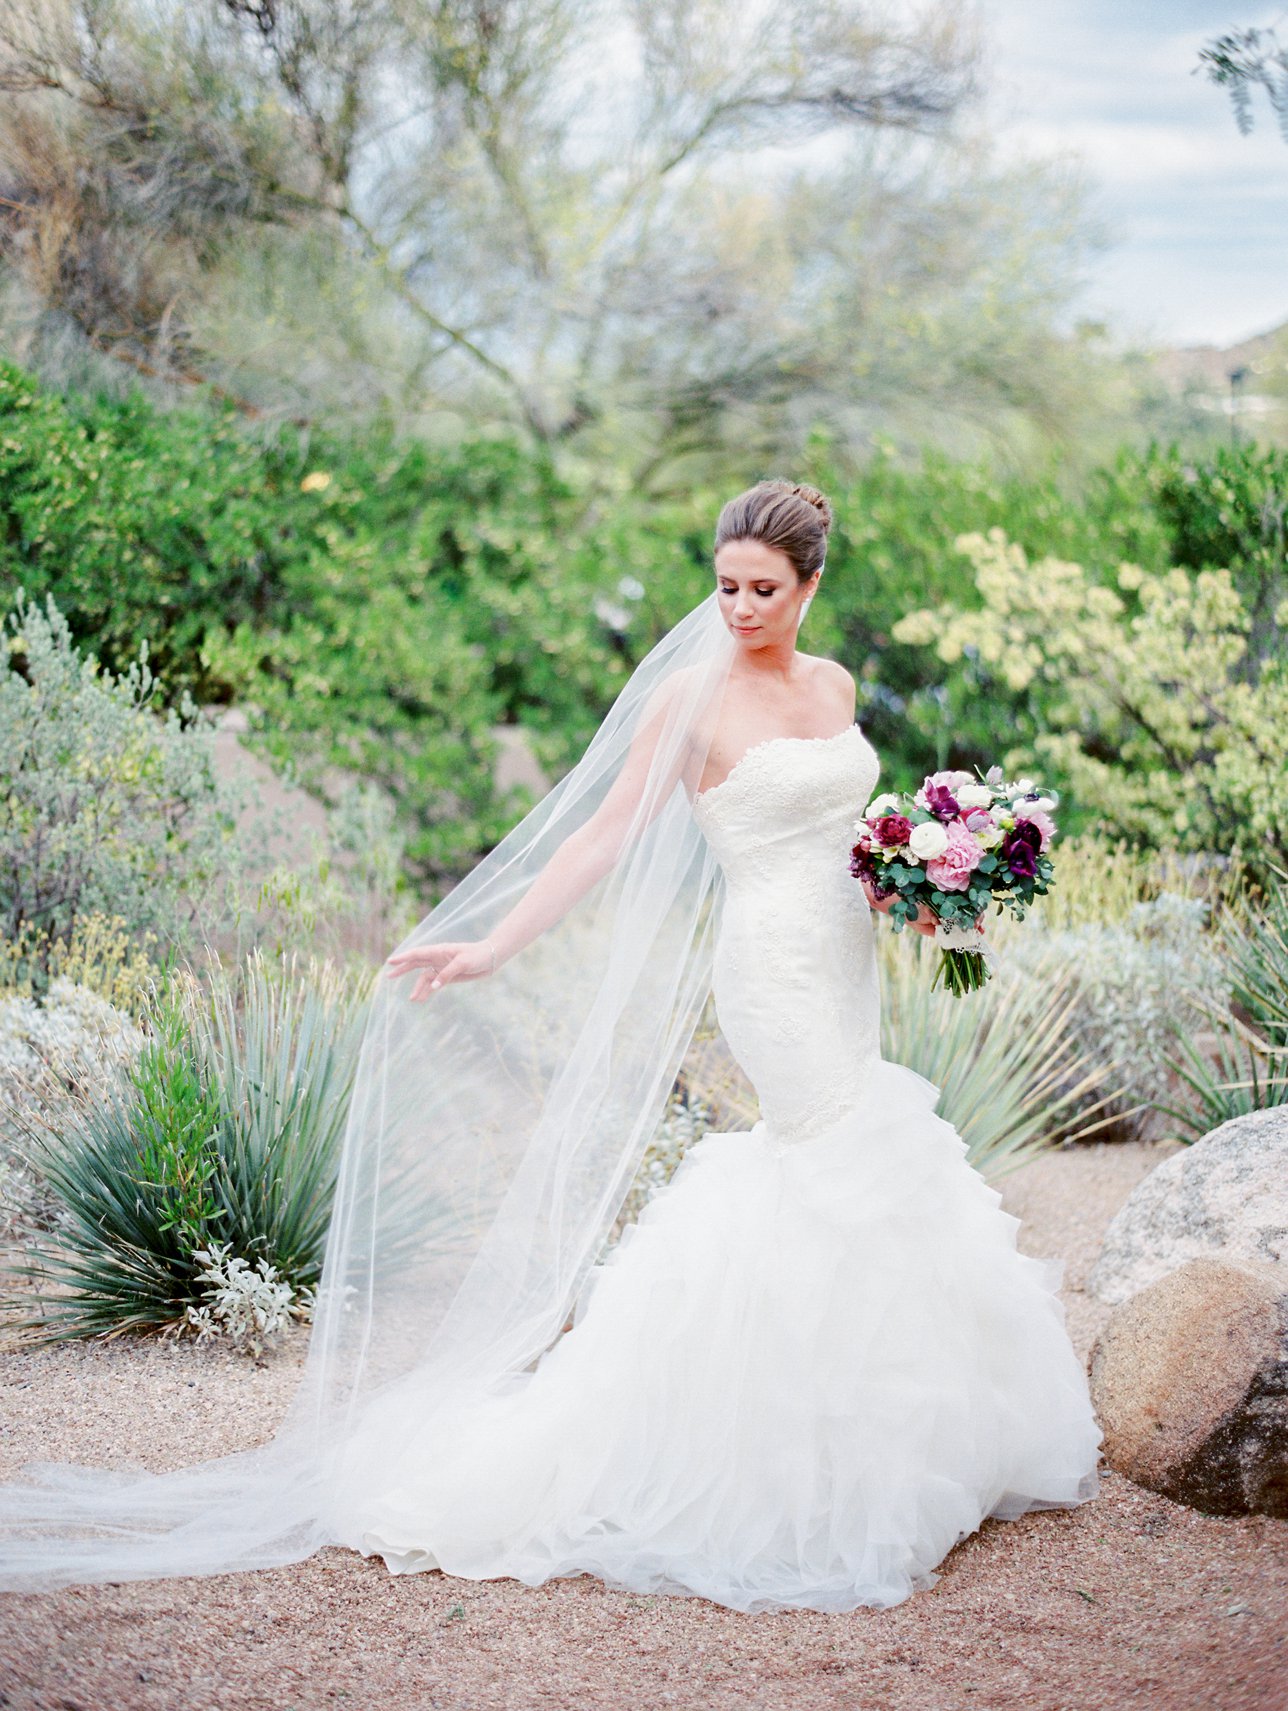 Four Seasons Scottsdale wedding photos - Scottsdale Wedding Photographer | Rachel Solomon Photography_8825